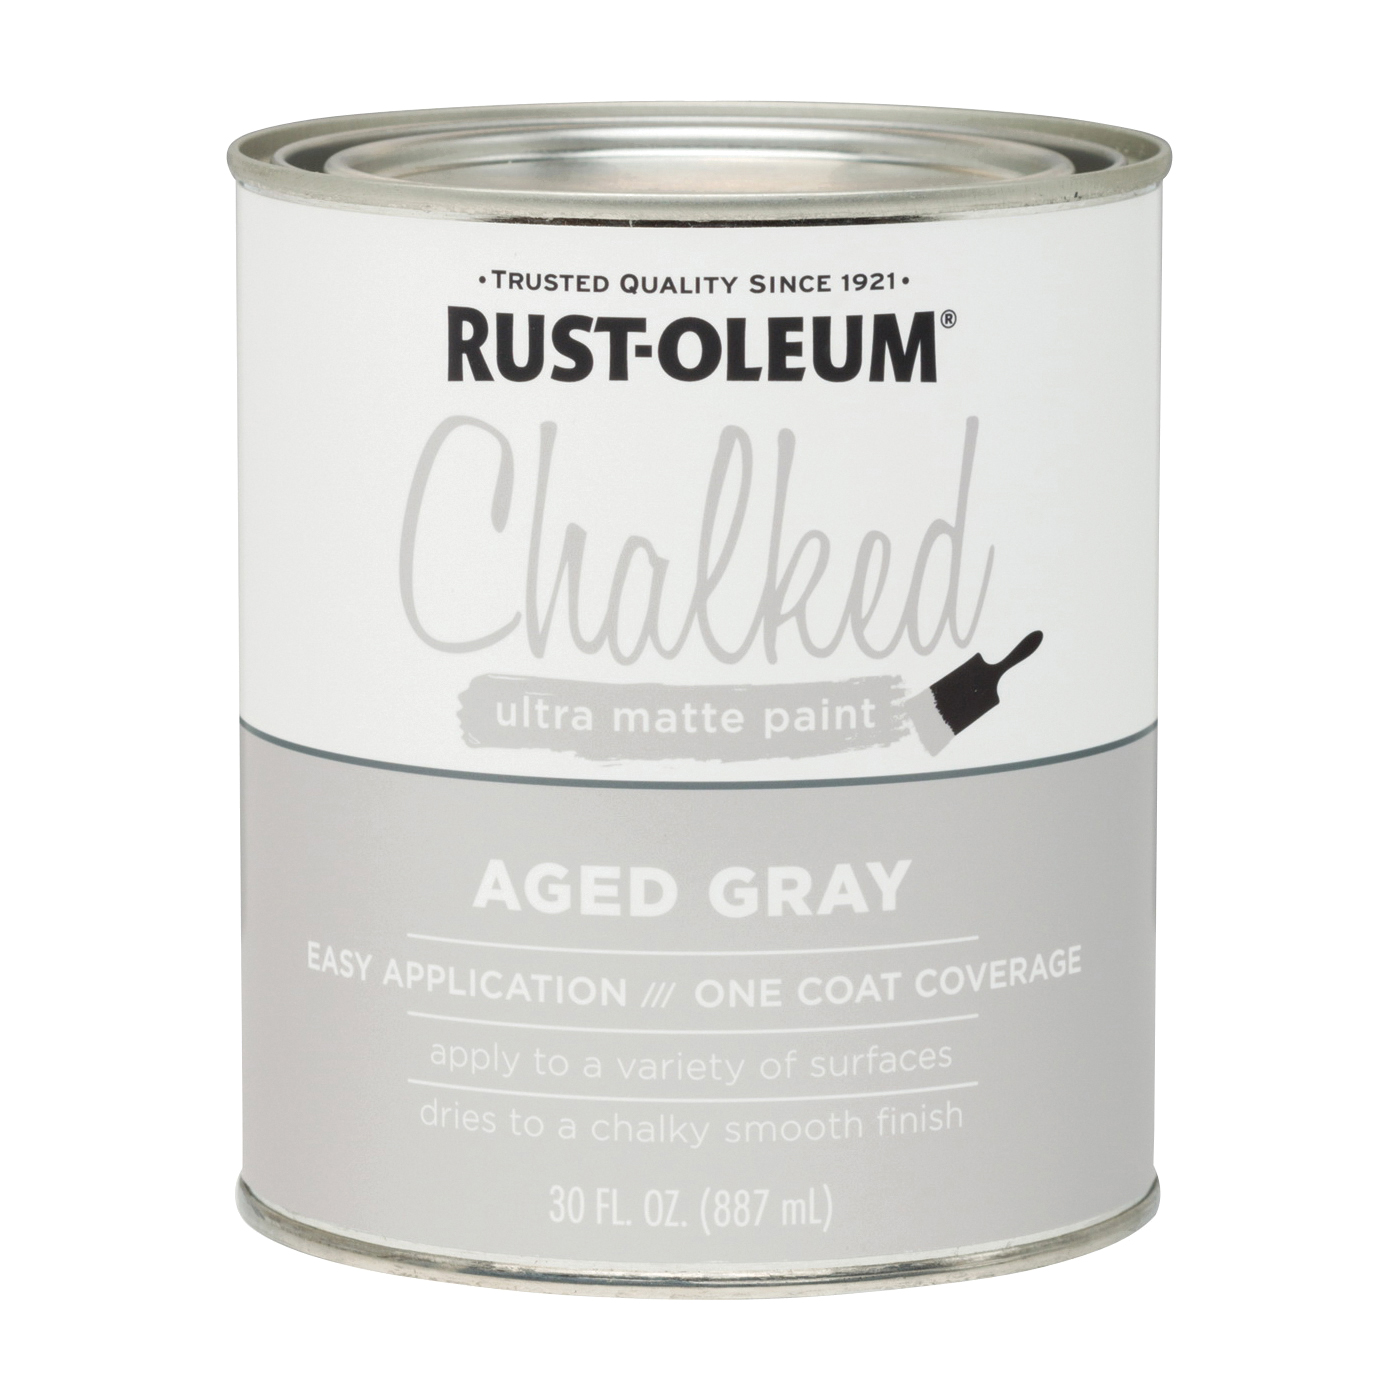 285143 Chalk Paint, Ultra Matte, Aged Gray, 30 oz